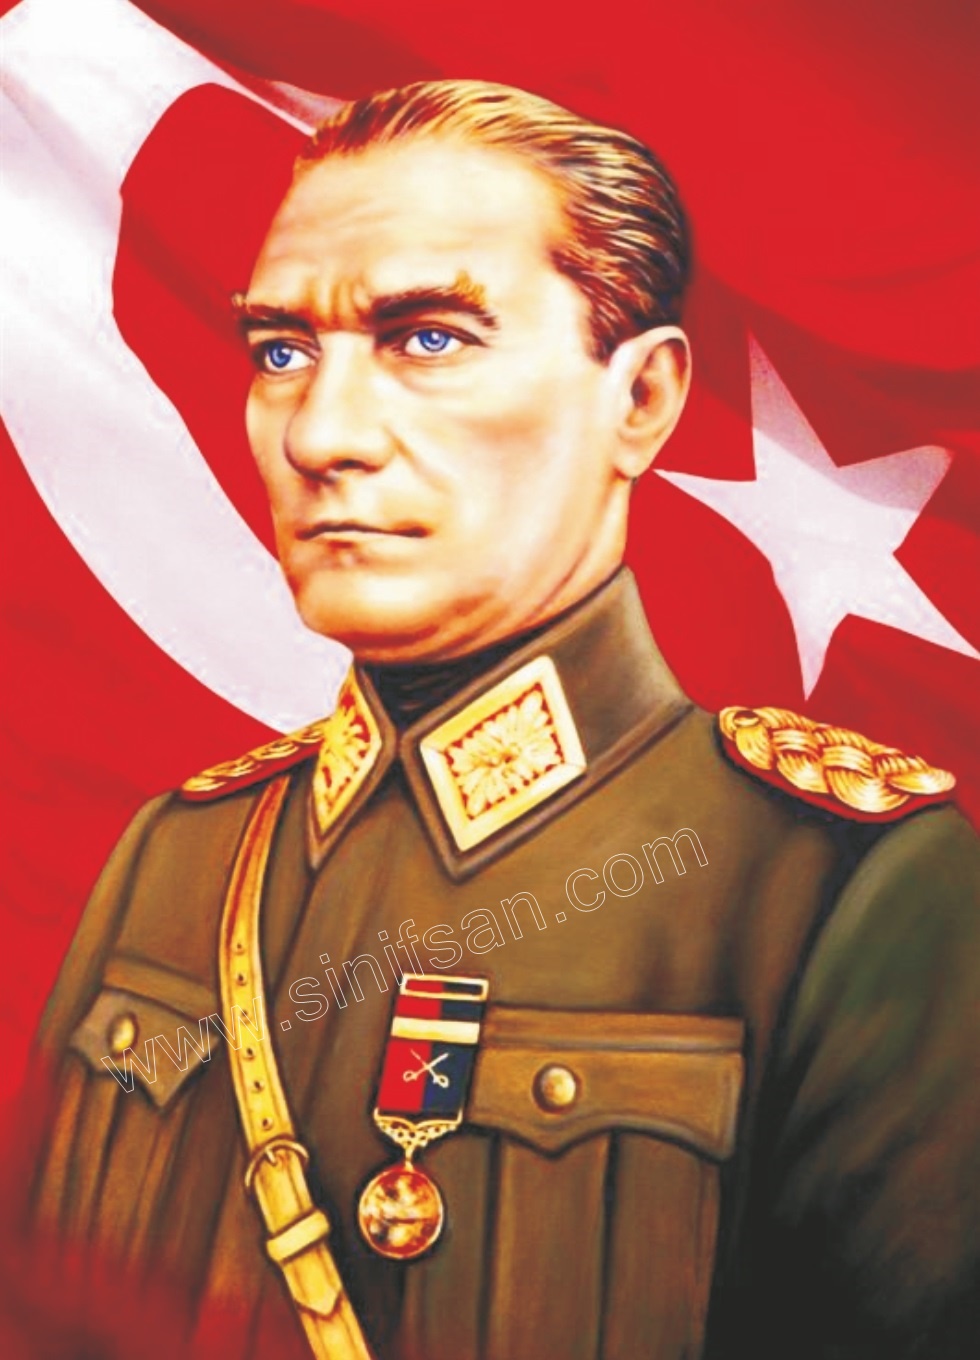 Bayraklı Atatürk posteri Atatürk posteri bayrak Bayrak Atatürk posteri Bayraklı Atatürk posteri Bayraklı Atatürk posterleri en ucuz poster imalatı 105x225 cm